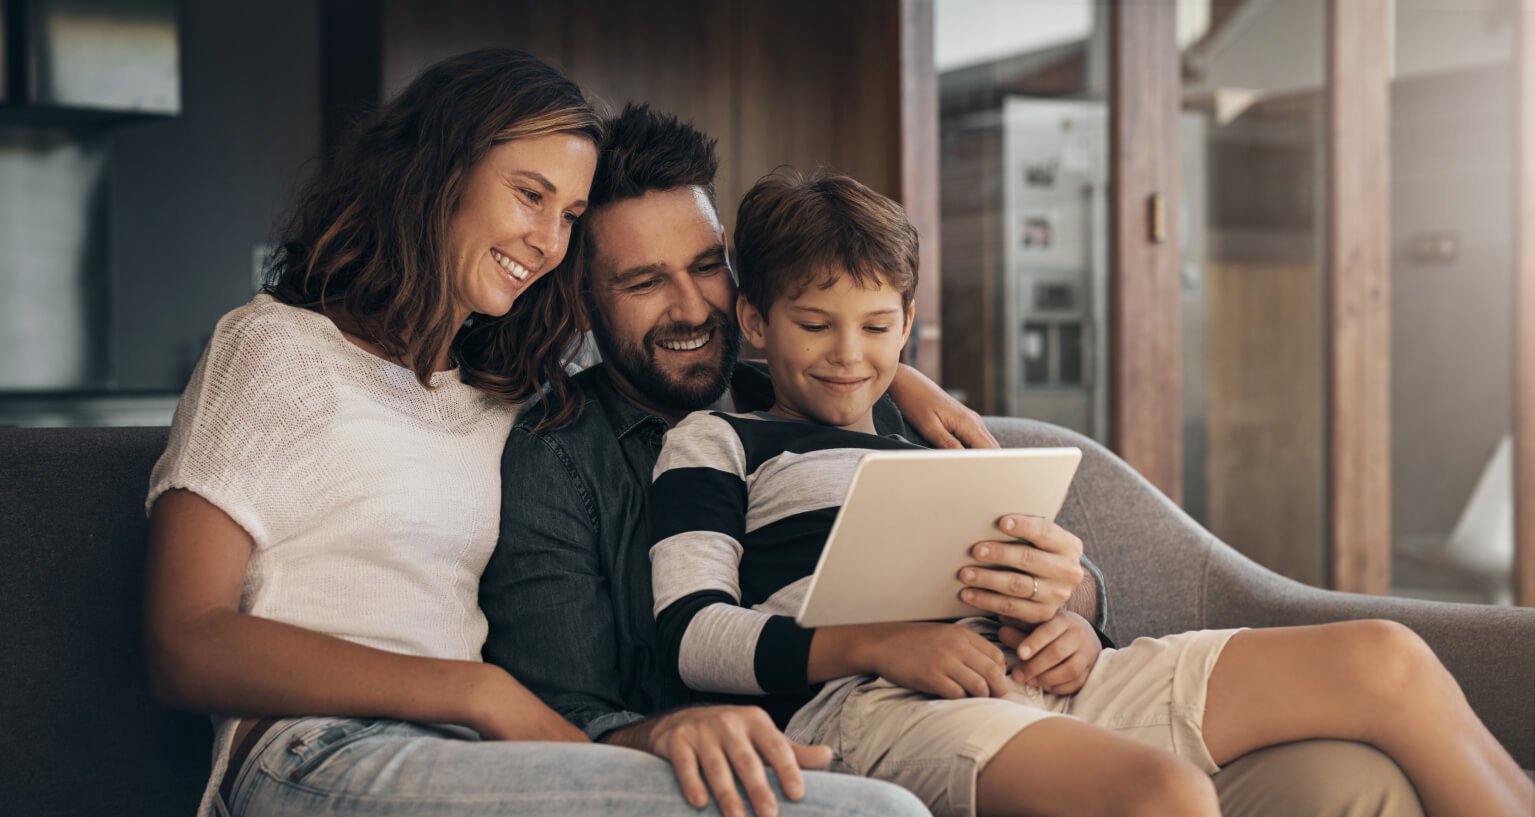 szczęśliwa trzyosobowa rodzina korzysta z inteligentnej automatyki domowej